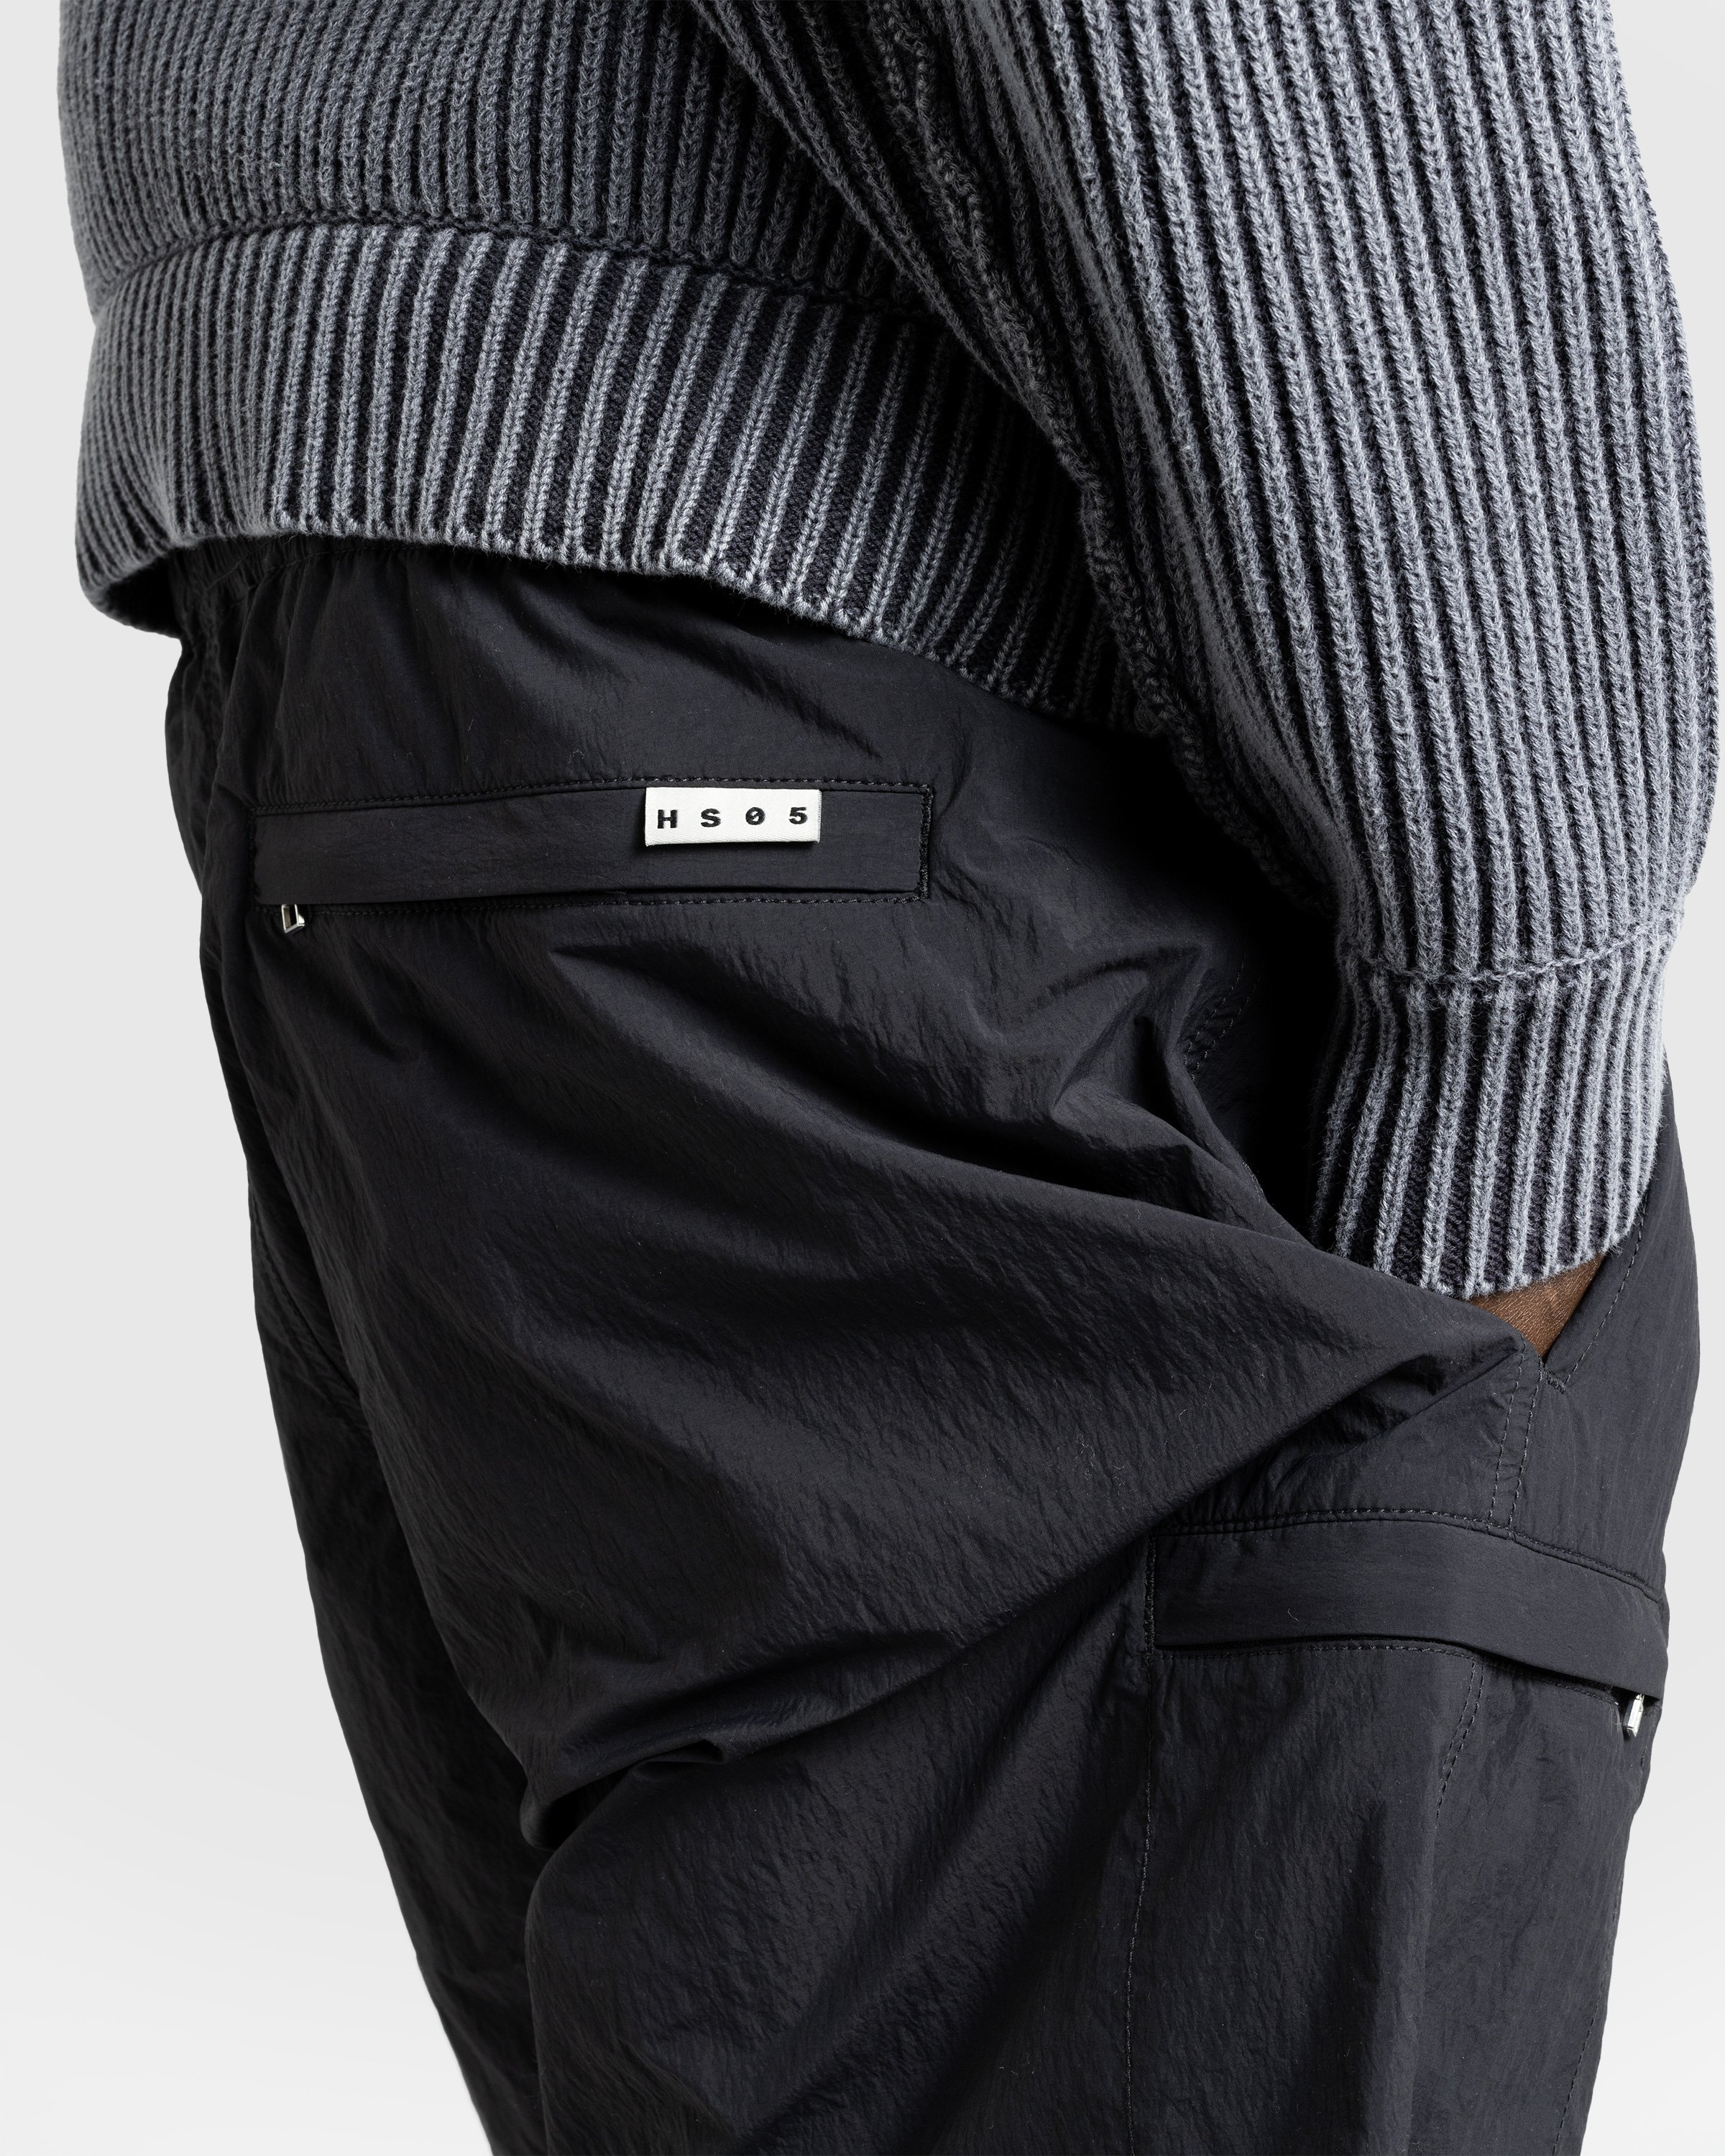 Highsnobiety HS05 - Natural Dyed Nylon Shorts Black - Clothing - Black - Image 6